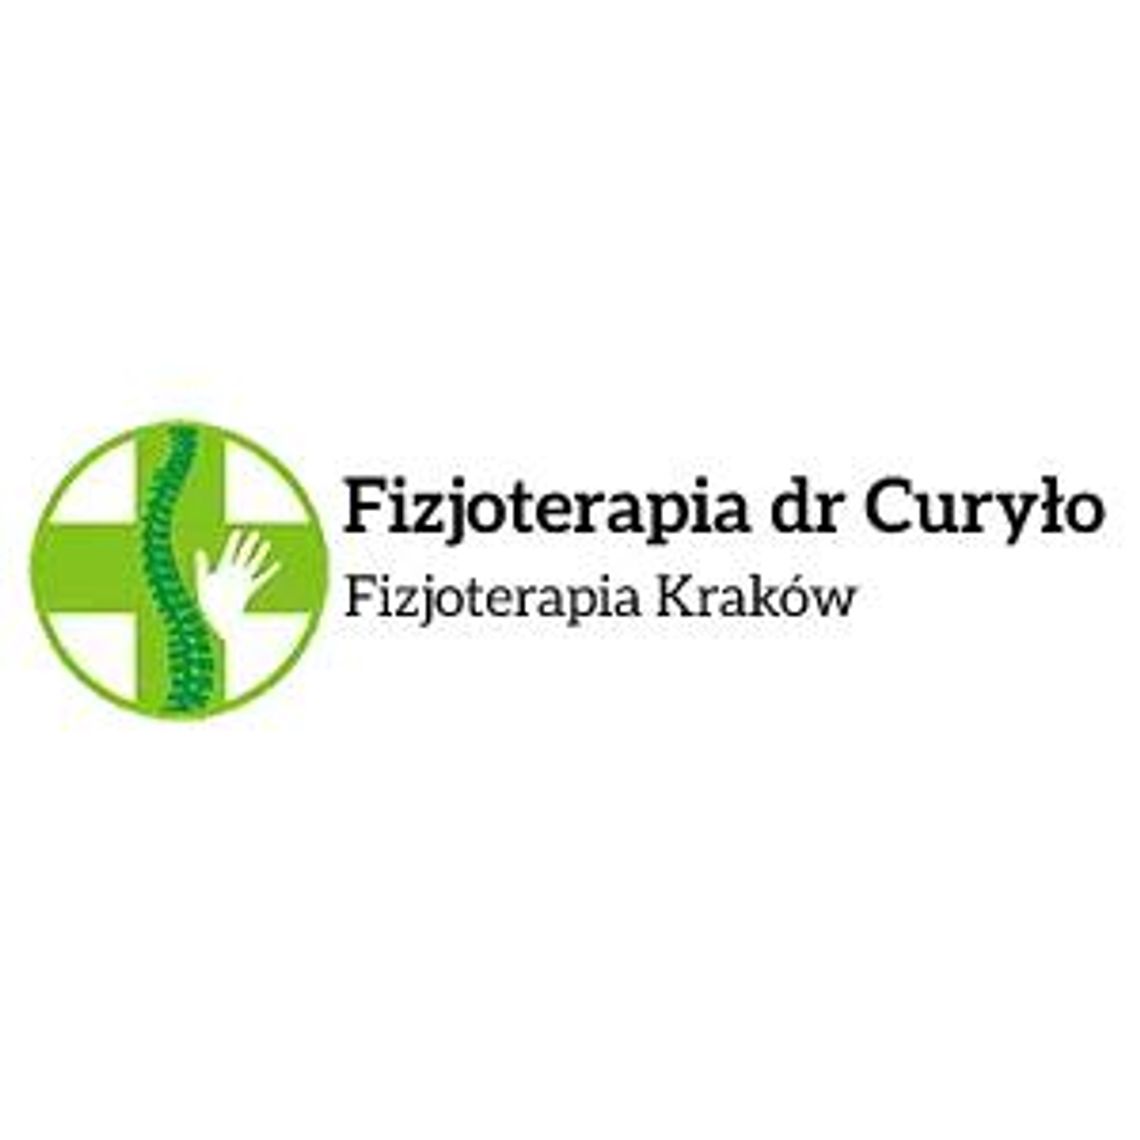 Wkładki ortopedyczne - Fizjoterapia dr Curyło